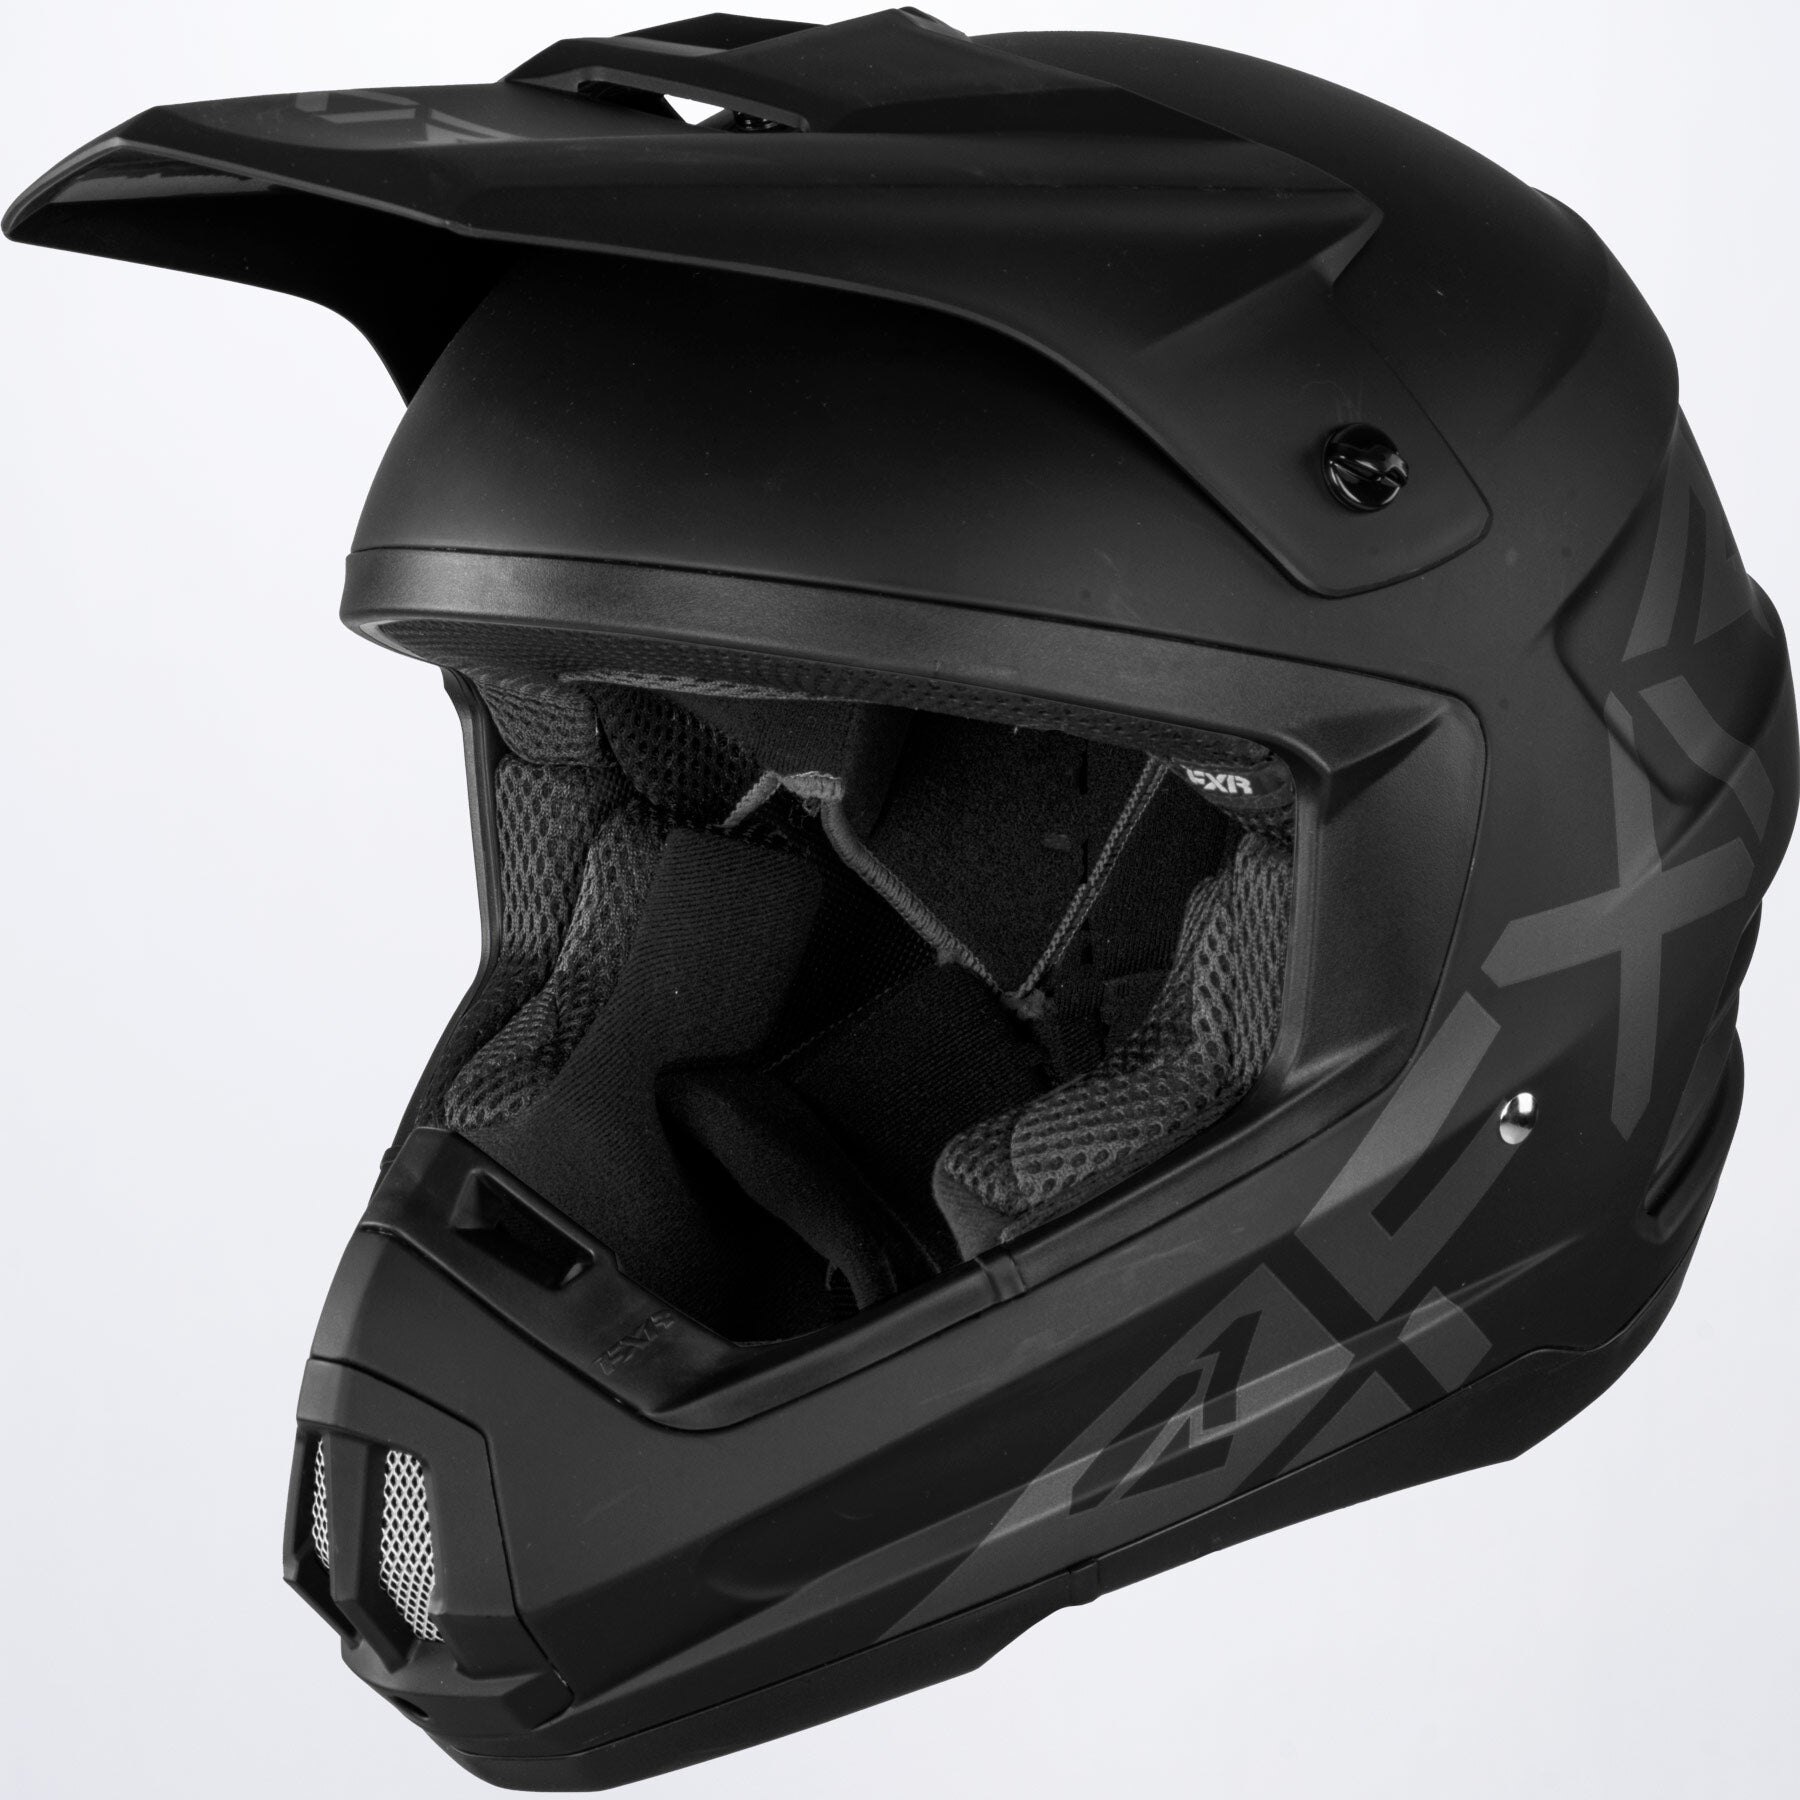 Torque Prime Helmet XS Black Ops